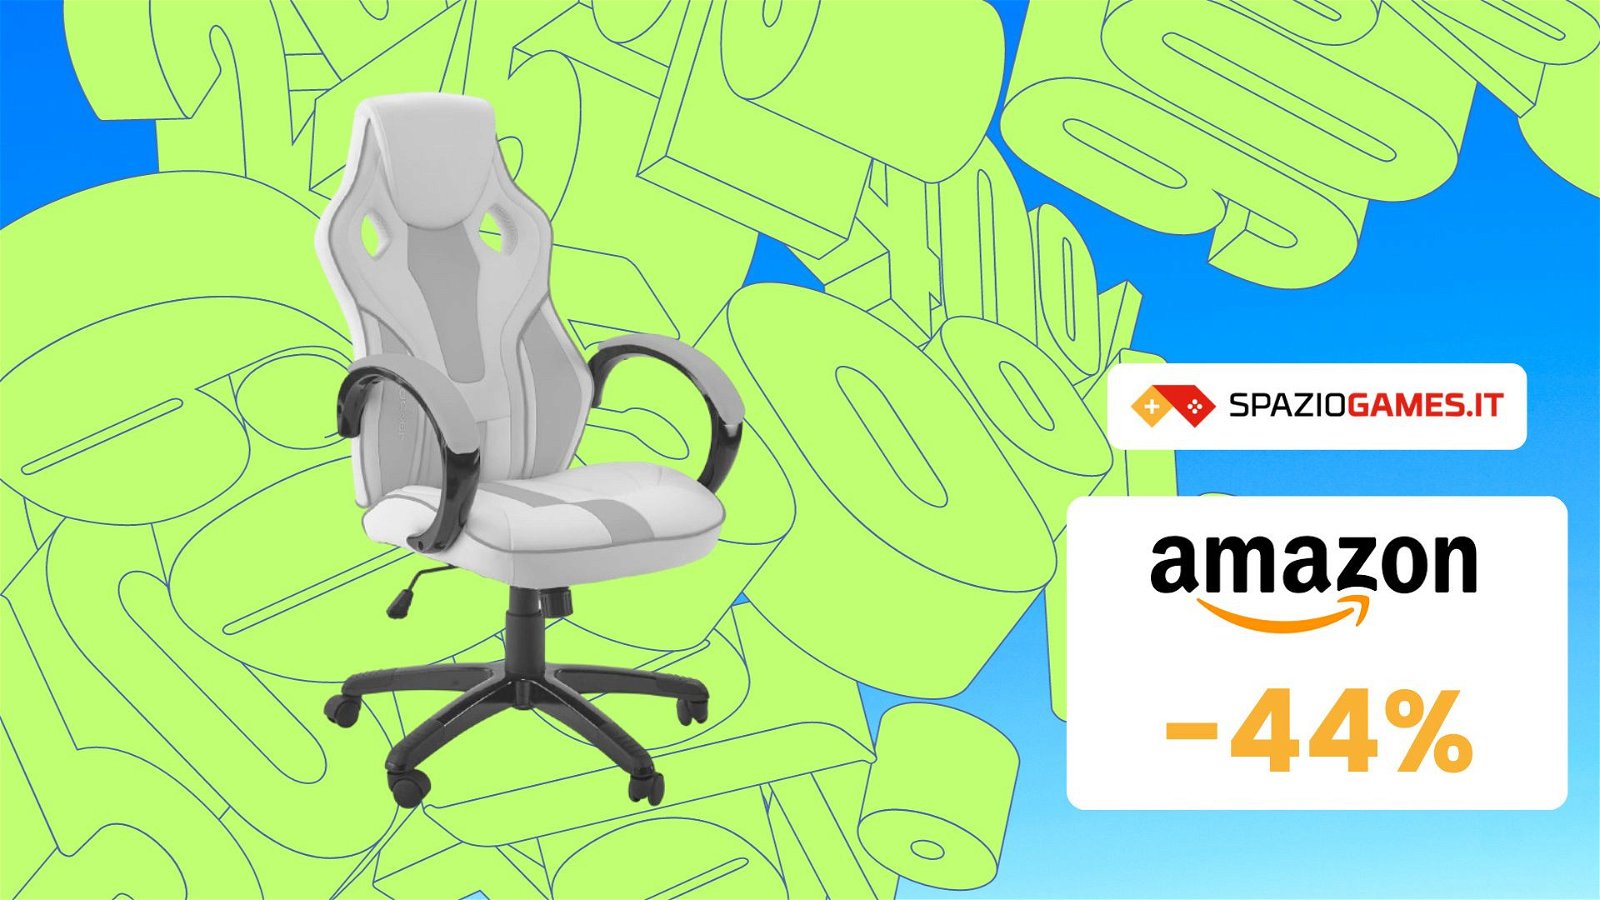 Questa sedia gaming, comoda e resistente, è al minimo storico su Amazon! -44%